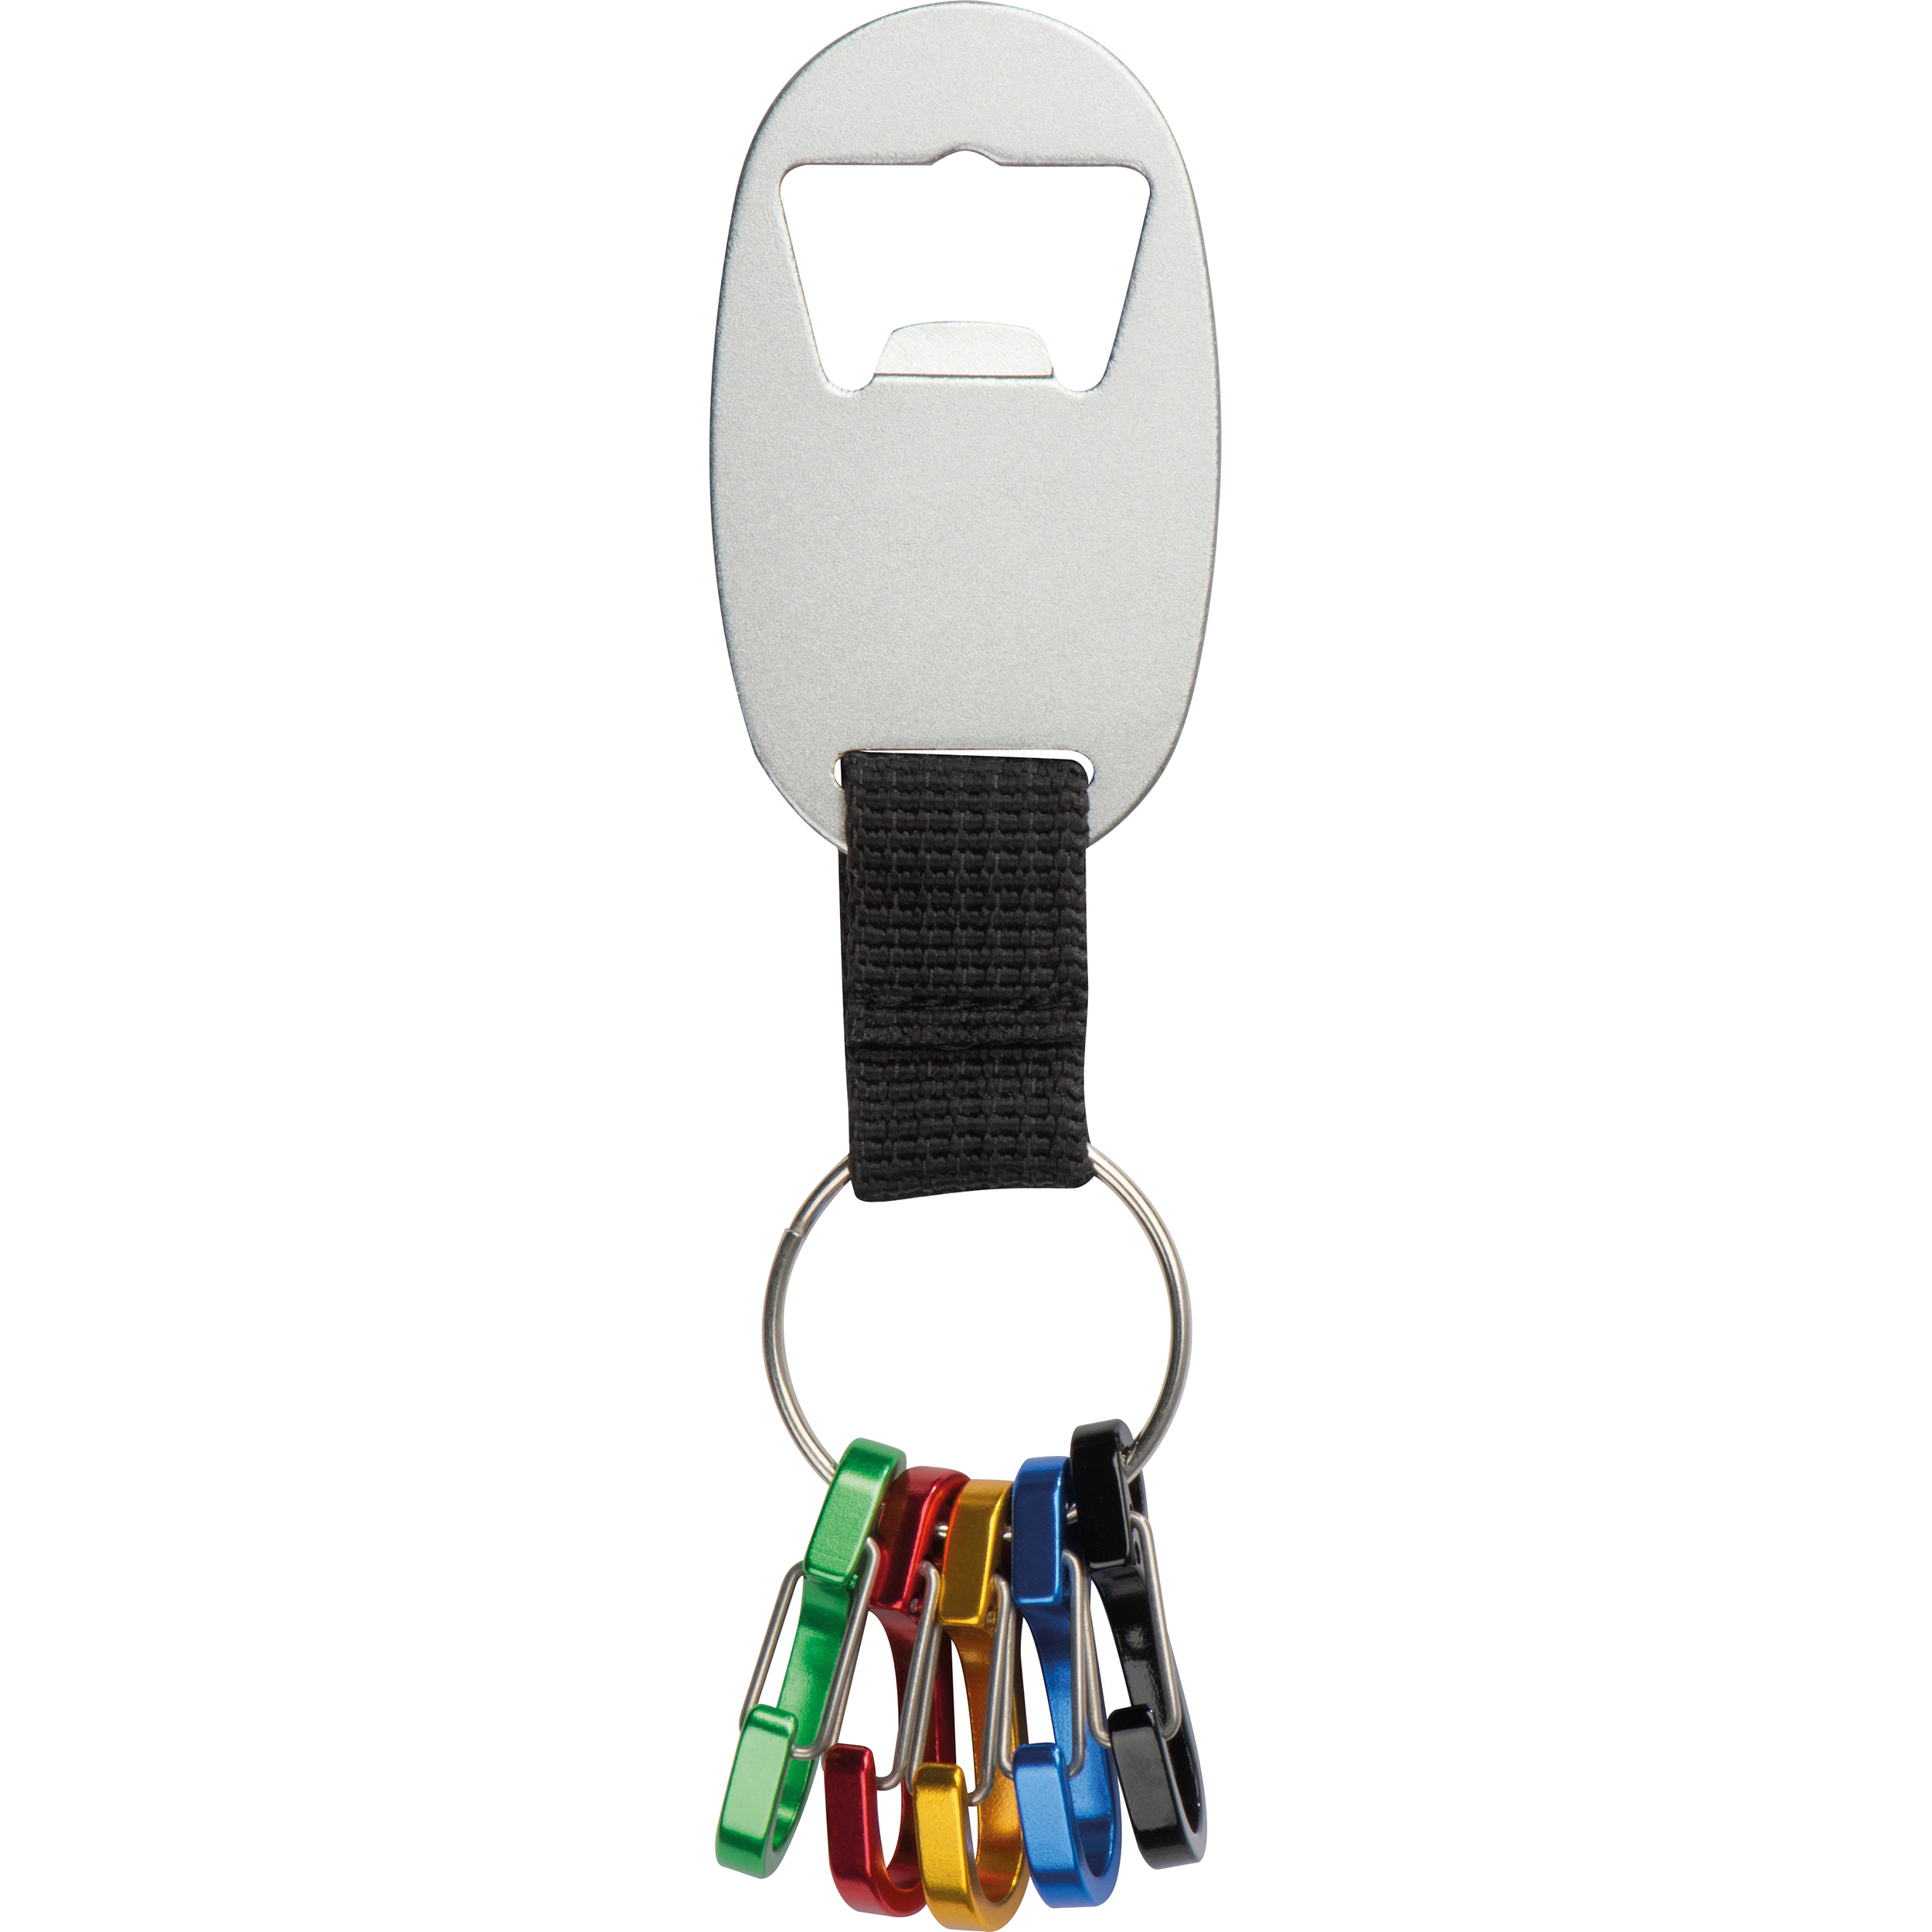 Schlüsselanhänger mit Flaschenöffner und 5 Minikarabinern